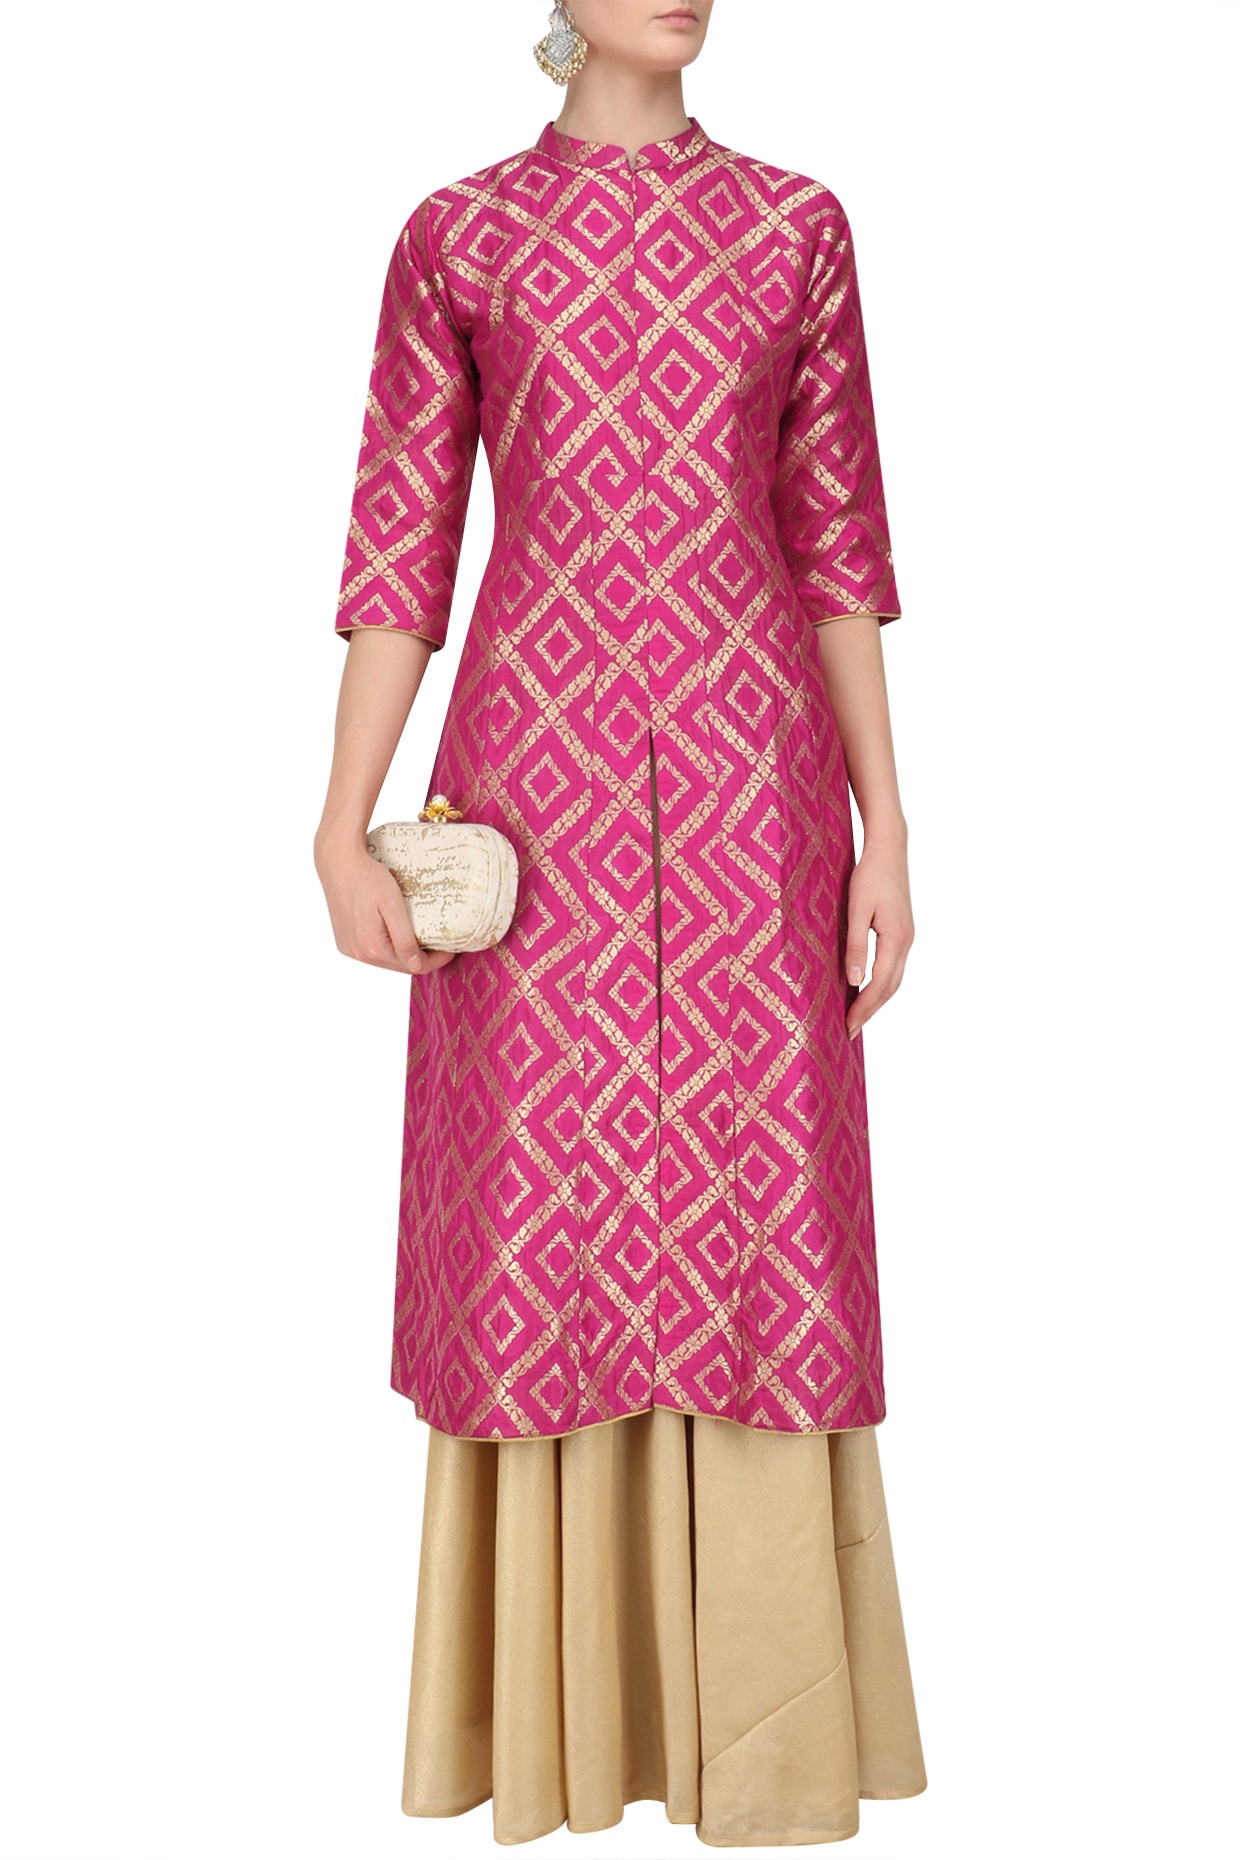 Pink brocade kali kurta and gold skirt 